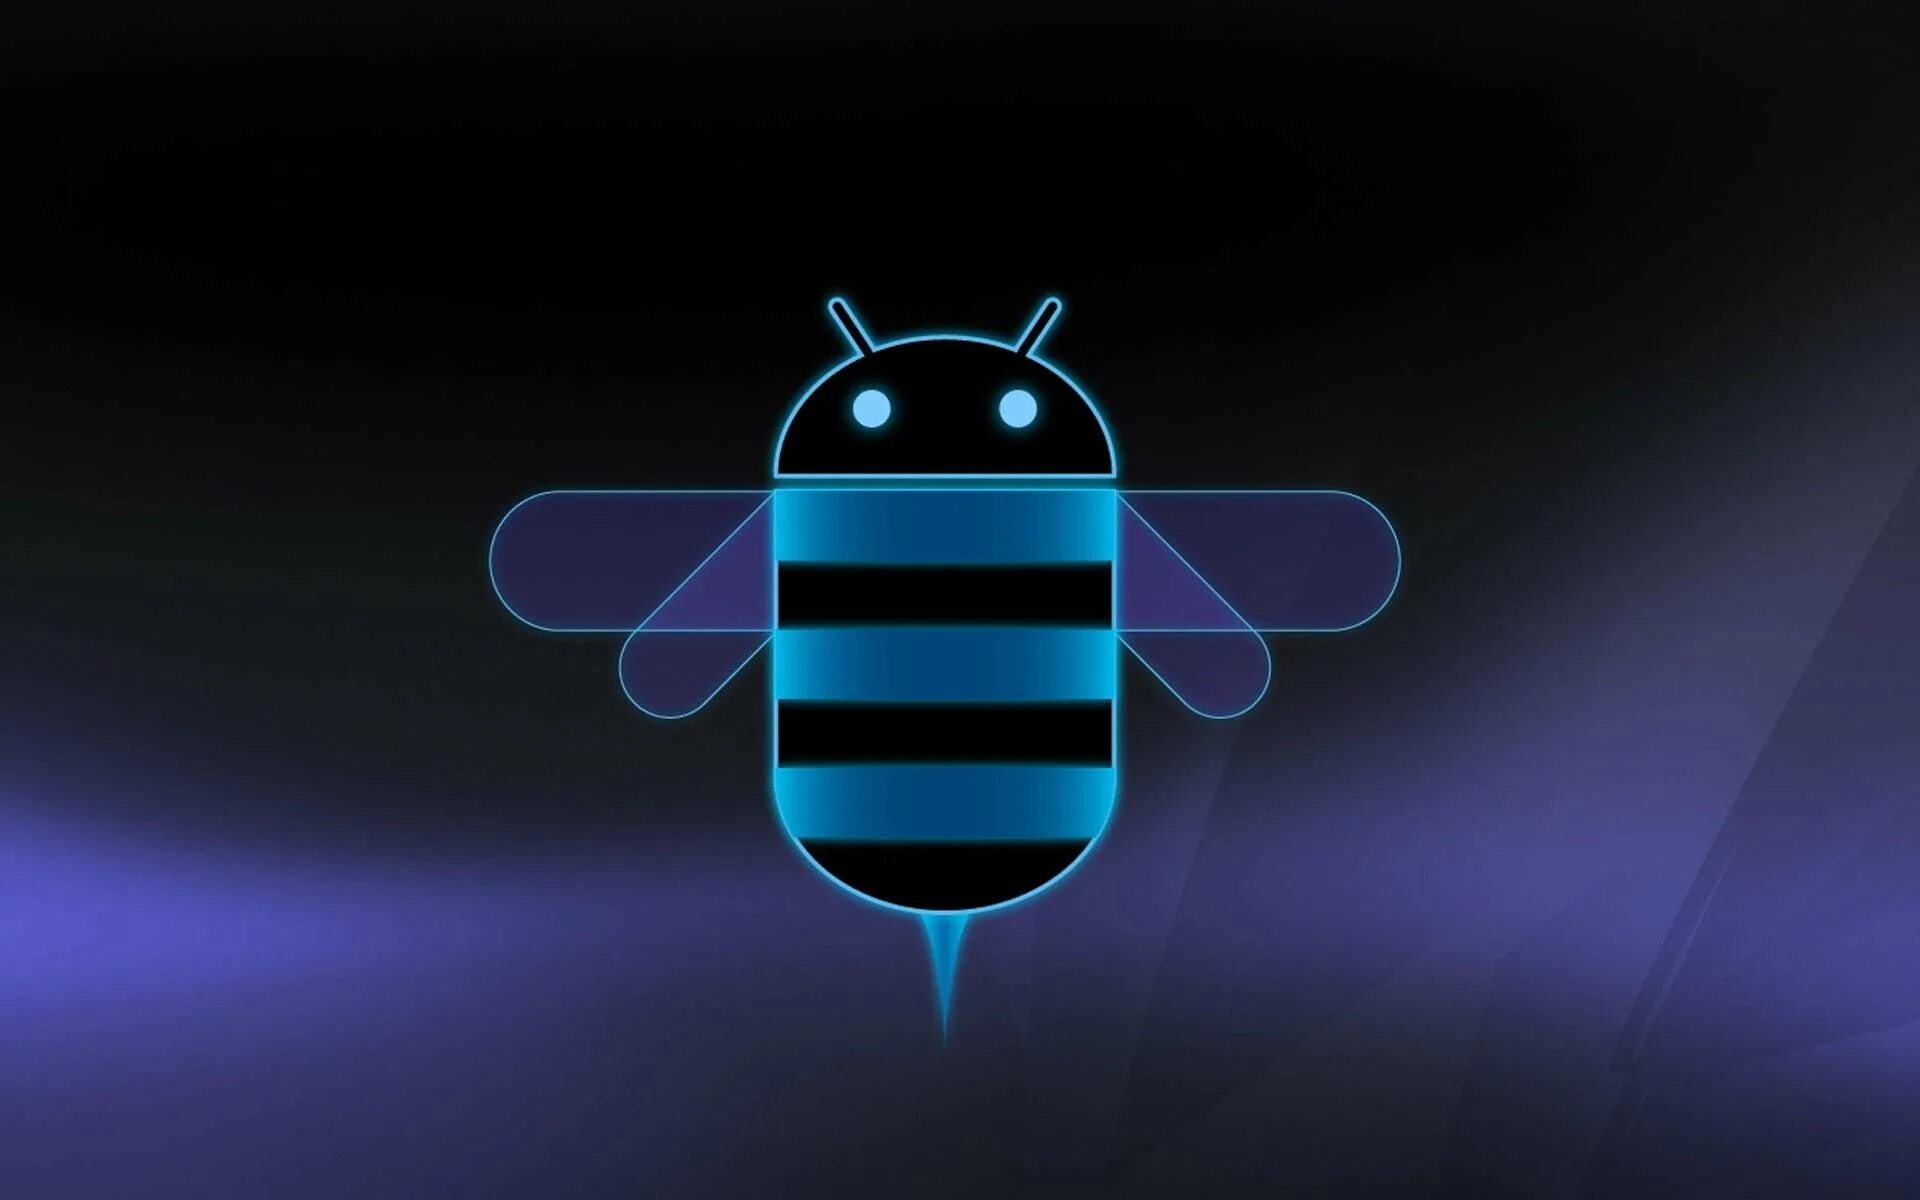 Логотип андроид на заставку. Андроид 3.0 пасхалка. Андроид хонейкомб. Android 3.0 / 3.1 / 3.2 Honeycomb. Заставка на рабочий стол андроид.